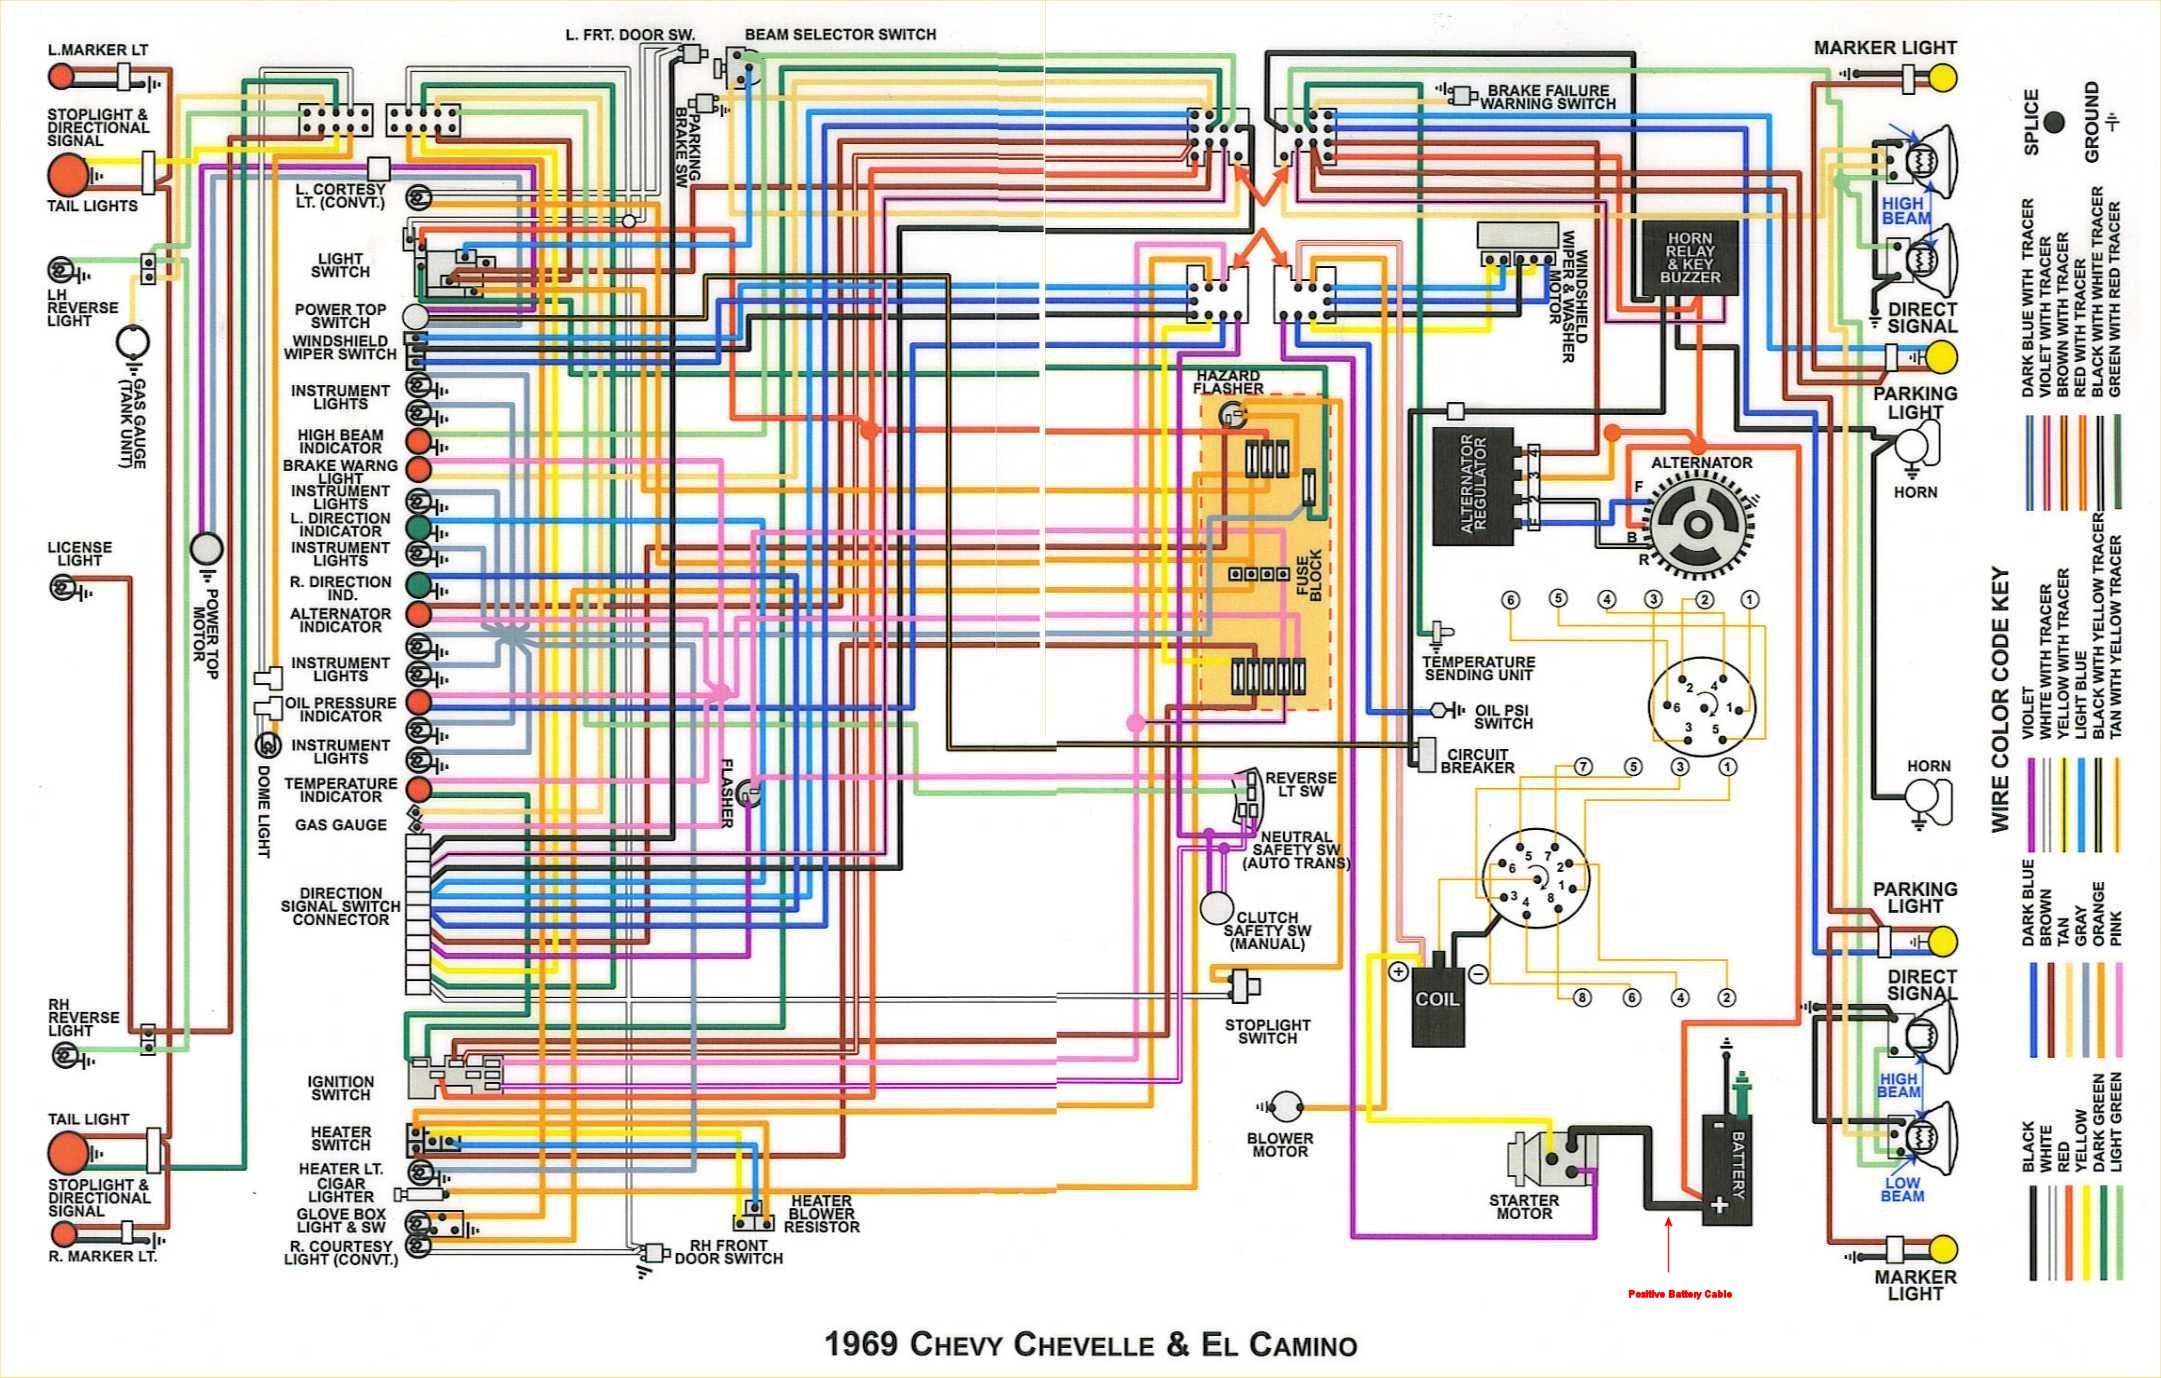 69 wiring diagrams with details - El Camino Central Forum : Chevrolet